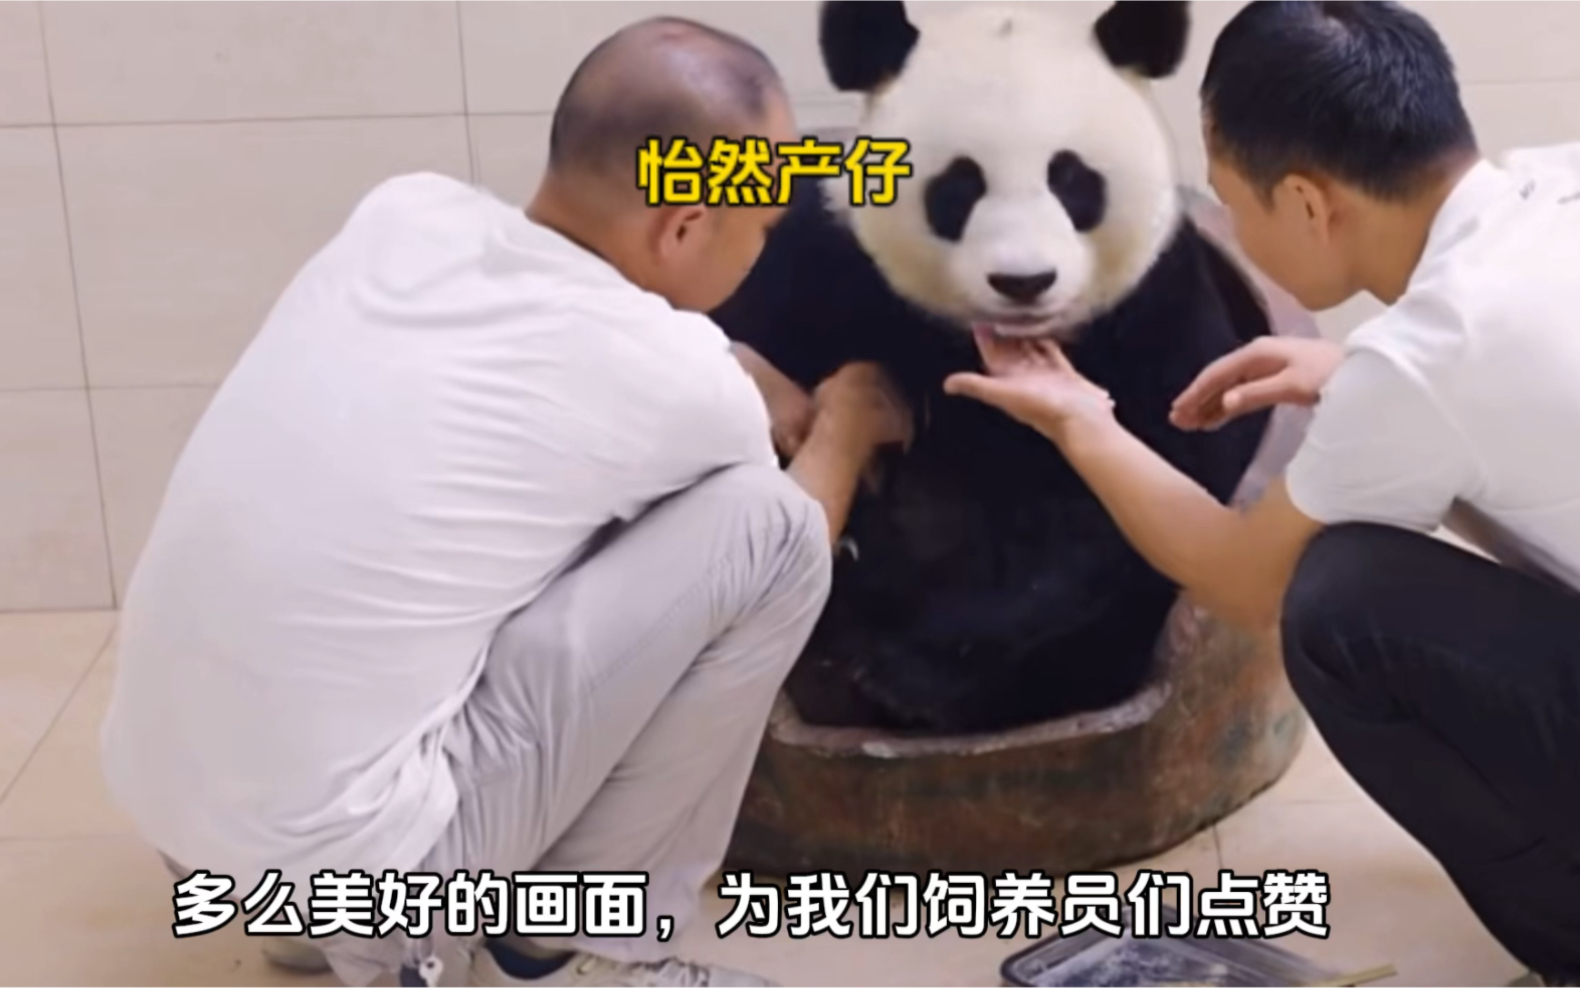 大熊猫怡然产仔，奶爸不顾自身安危出手救援